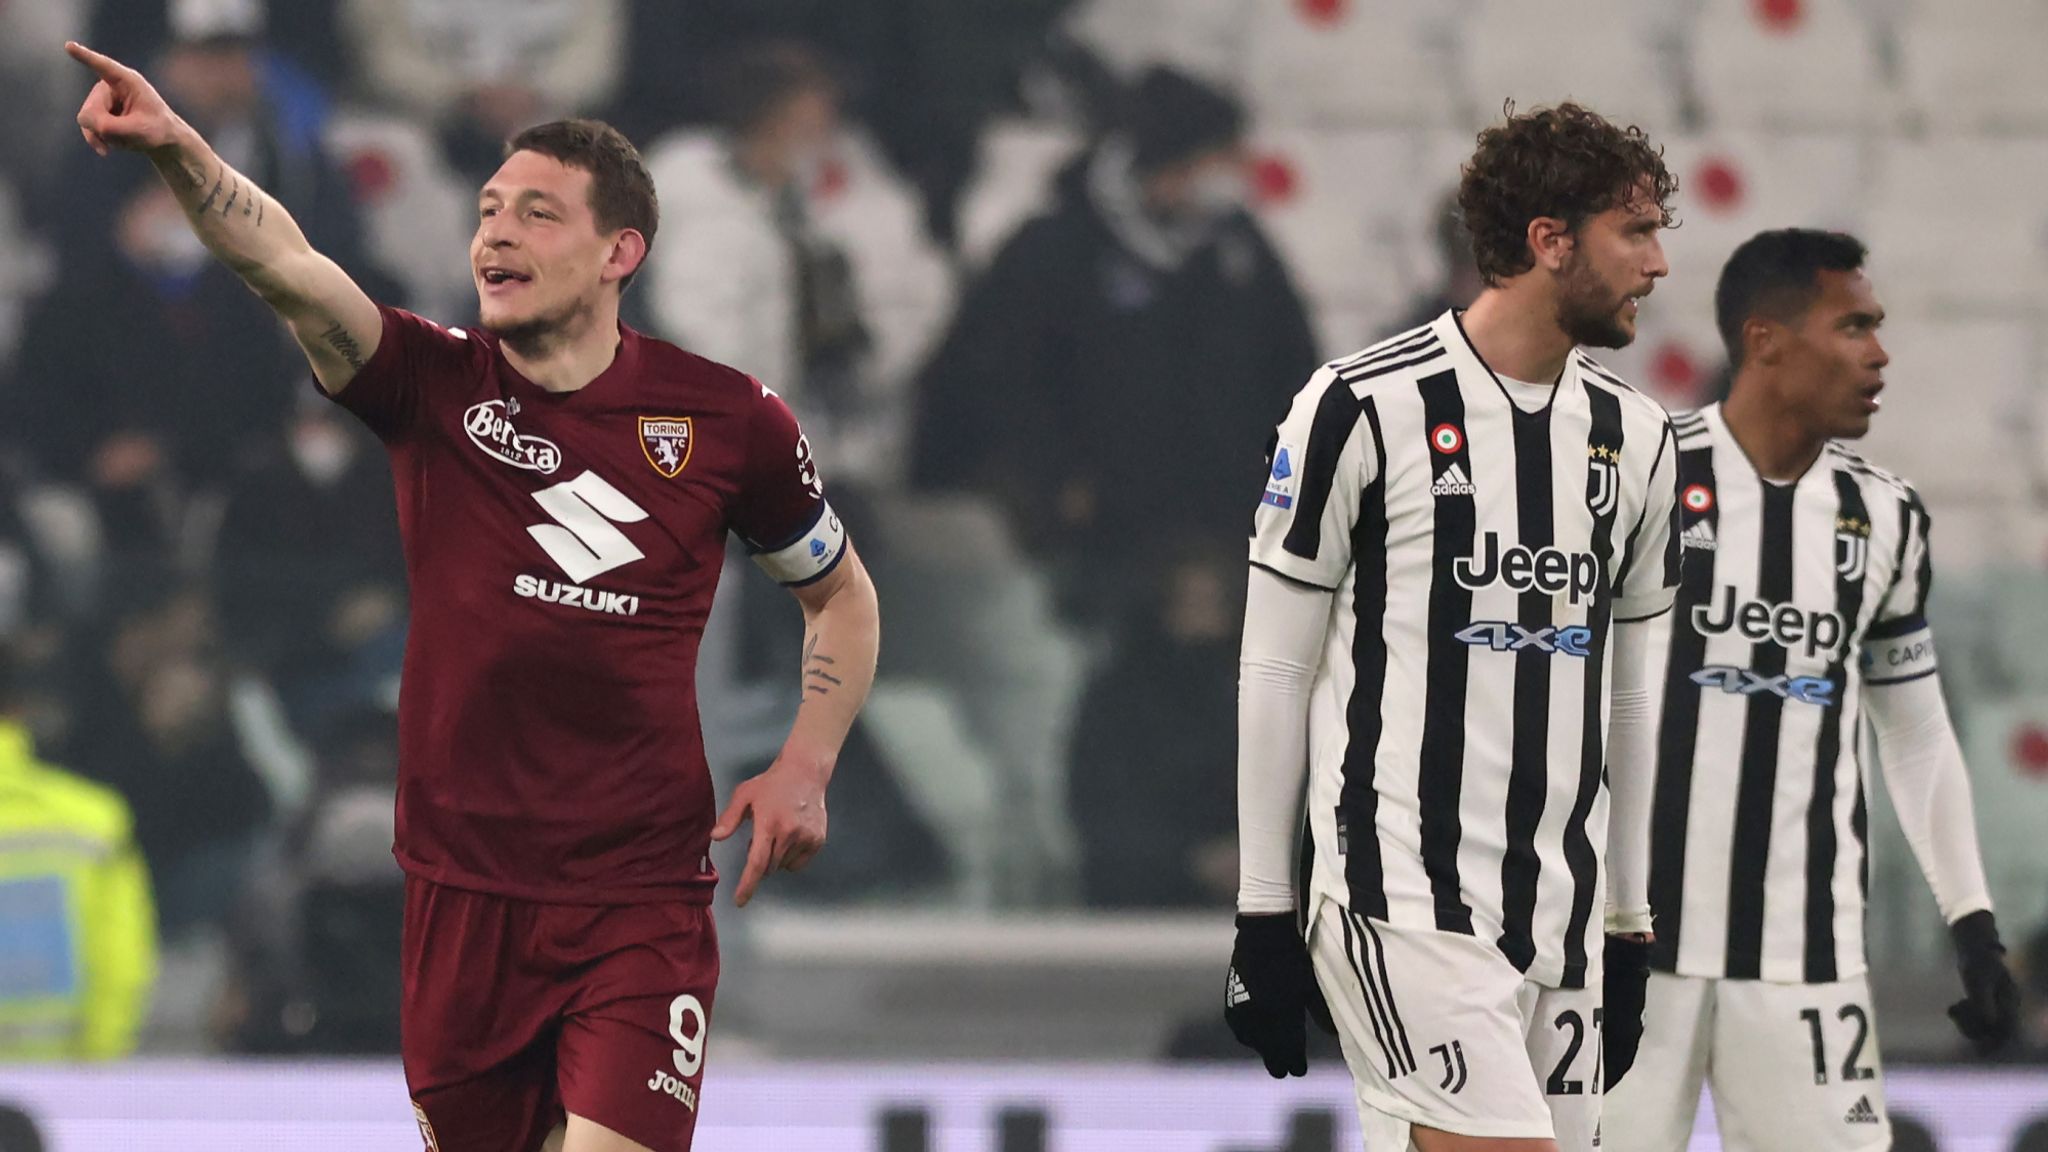 Juventus sai na frente em derby de Turim, mas Belotti marca e garante  empate para o Torino, futebol internacional